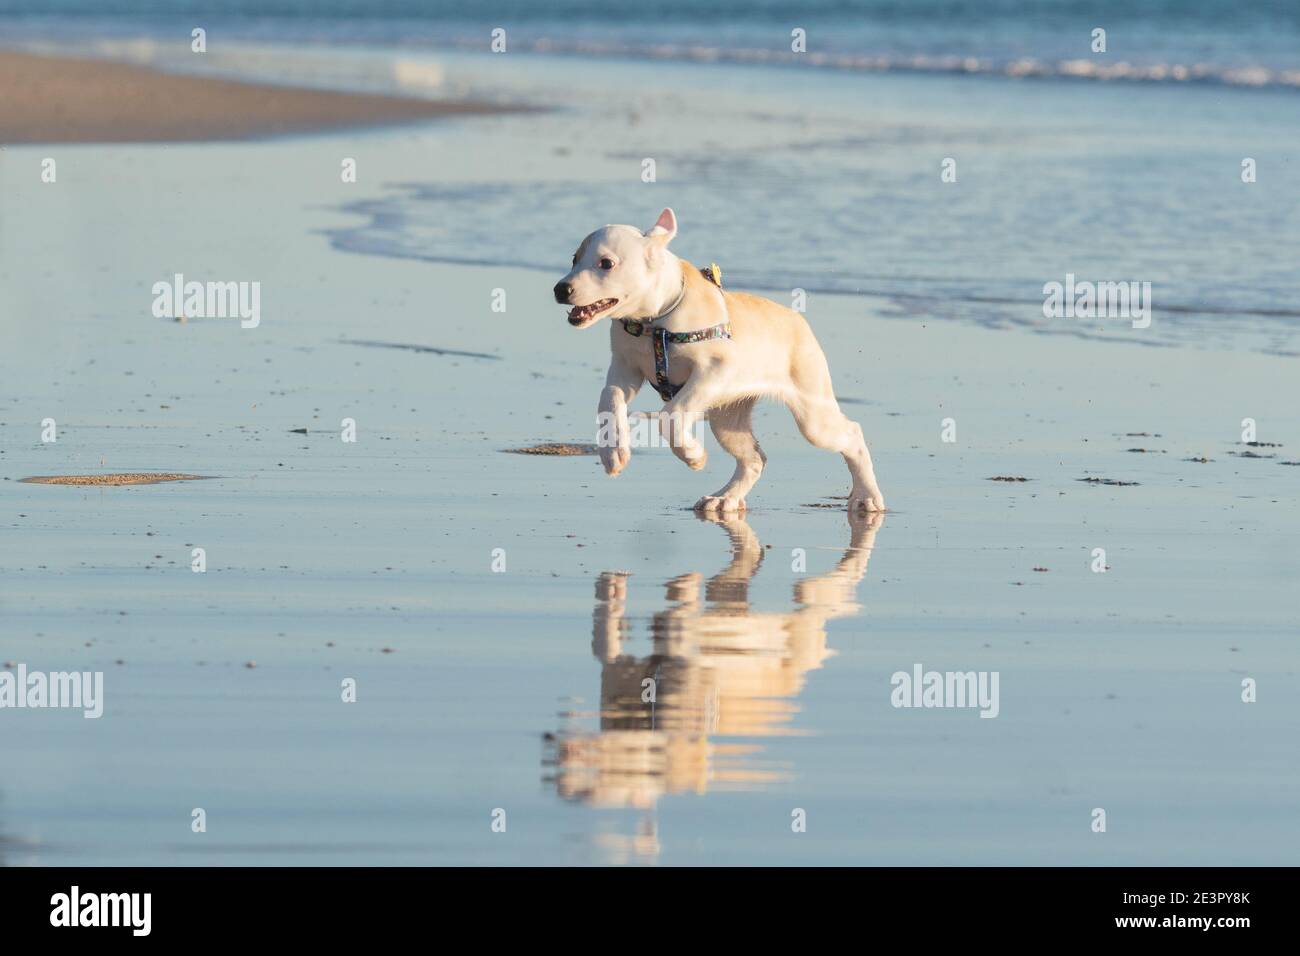 Giovane cucciolo femminile che gioca e corre sulla spiaggia, possiamo vedere il suo riflesso in acqua Foto Stock